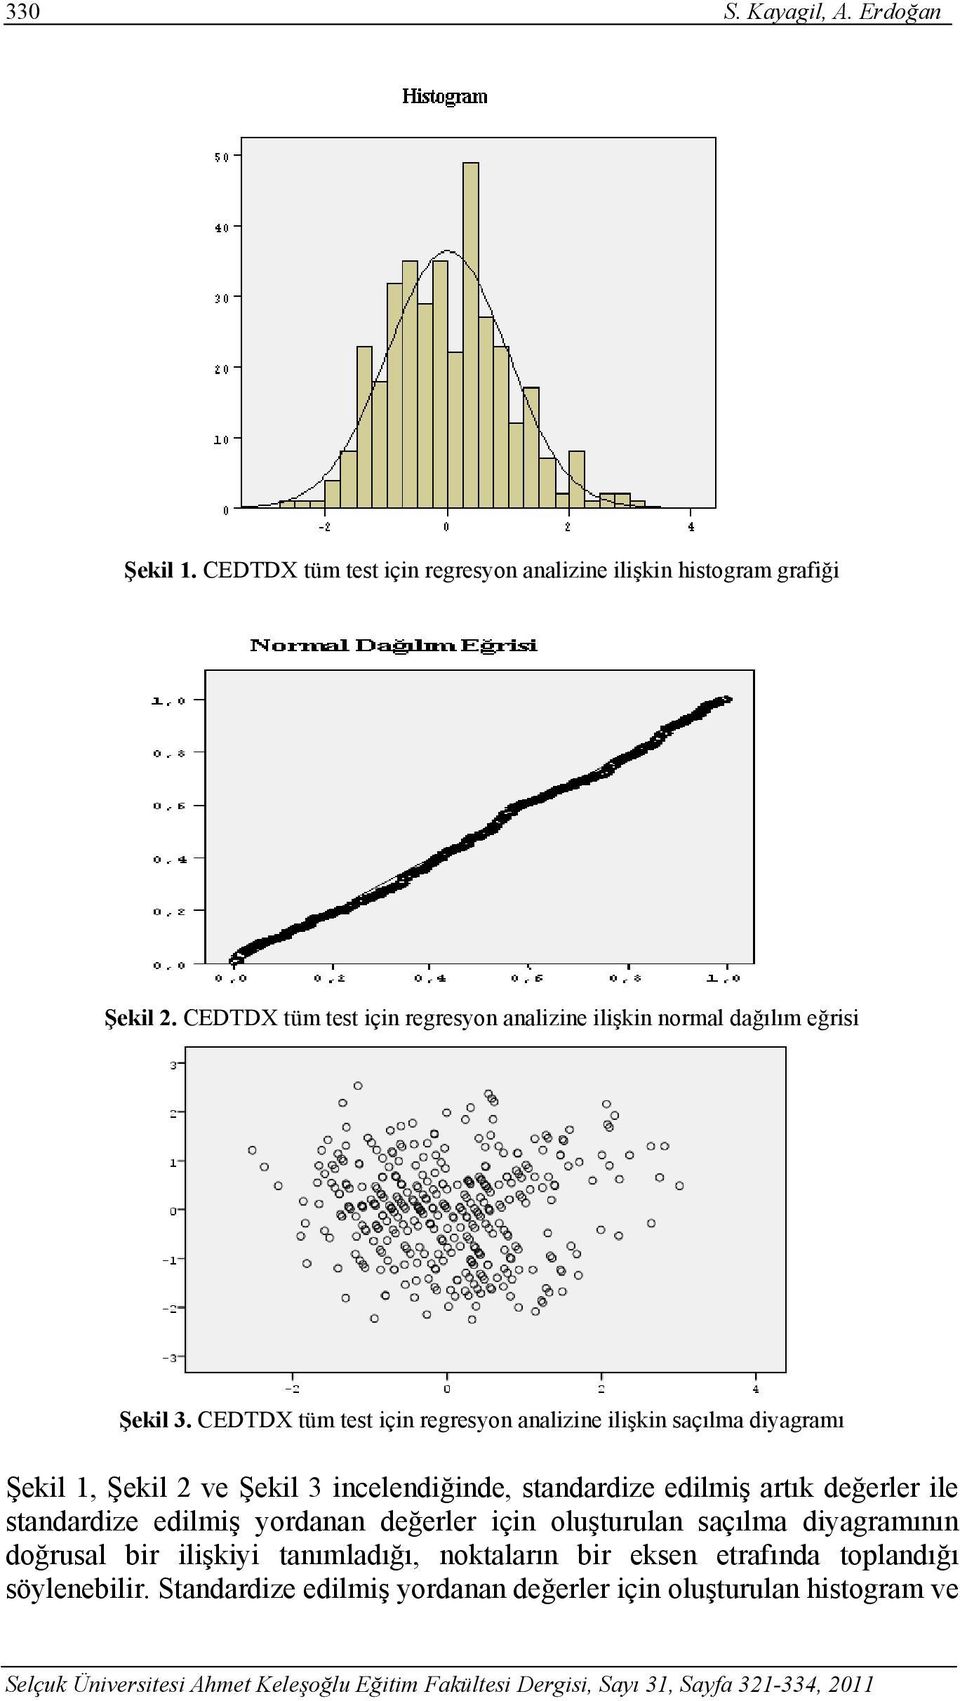 CEDTDX tüm test için regresyon analizine ilişkin saçılma diyagramı Şekil 1, Şekil 2 ve Şekil 3 incelendiğinde, standardize edilmiş artık